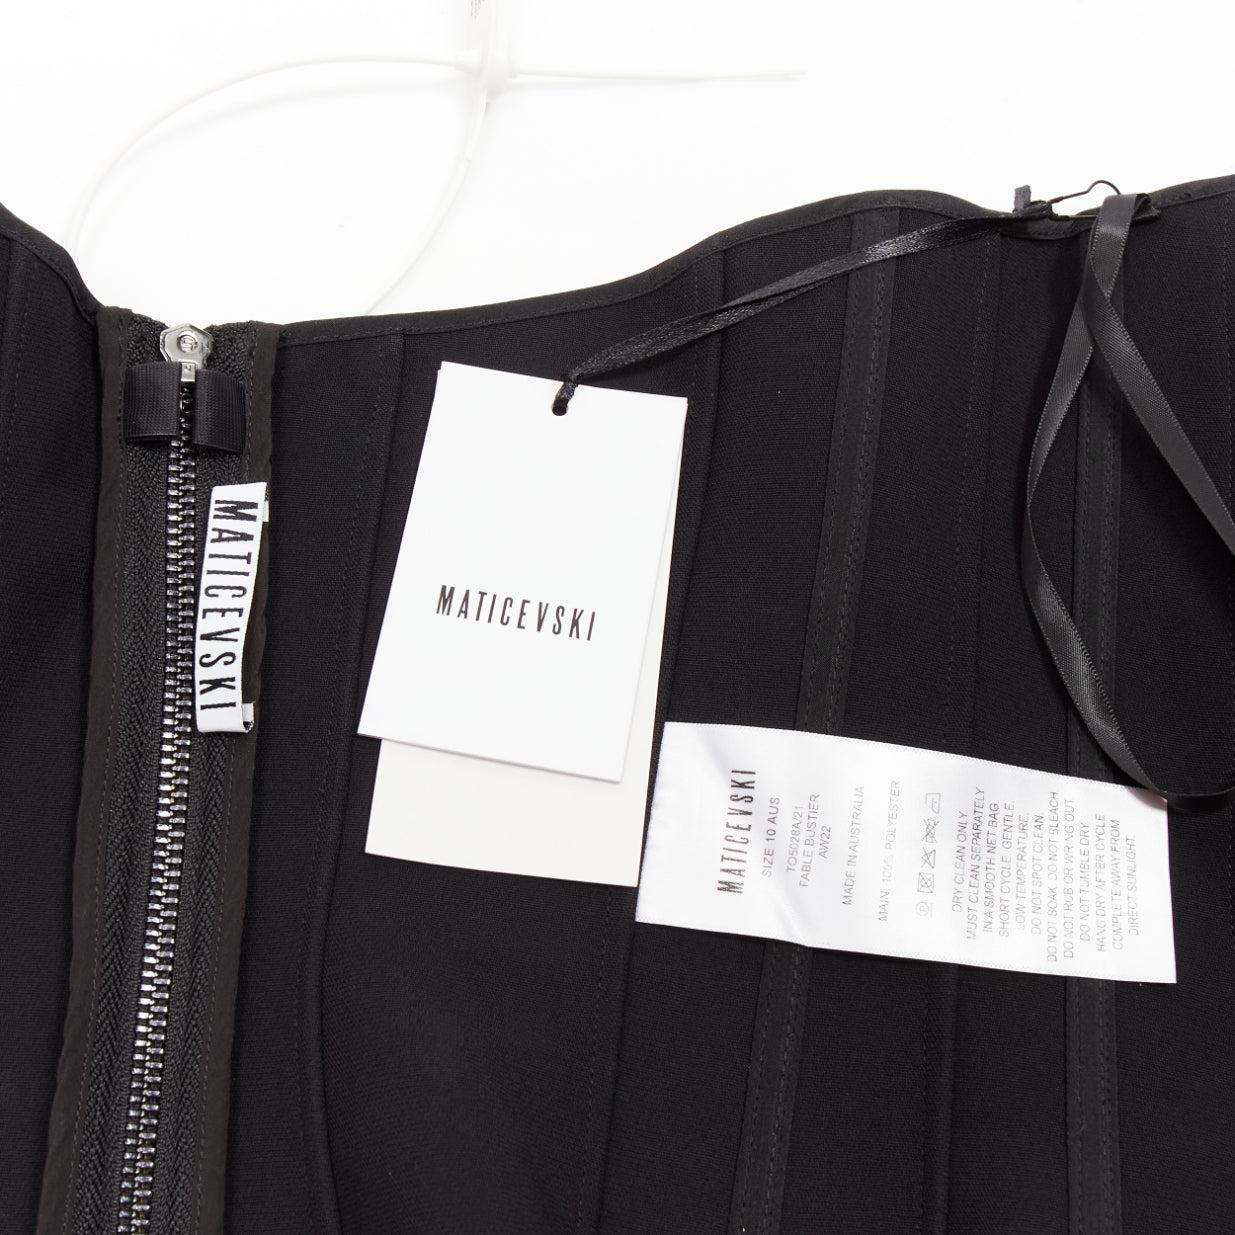 MATICEVSKI 2022 Fable Bustier black contour seam boned corset top AUS10 M For Sale 3